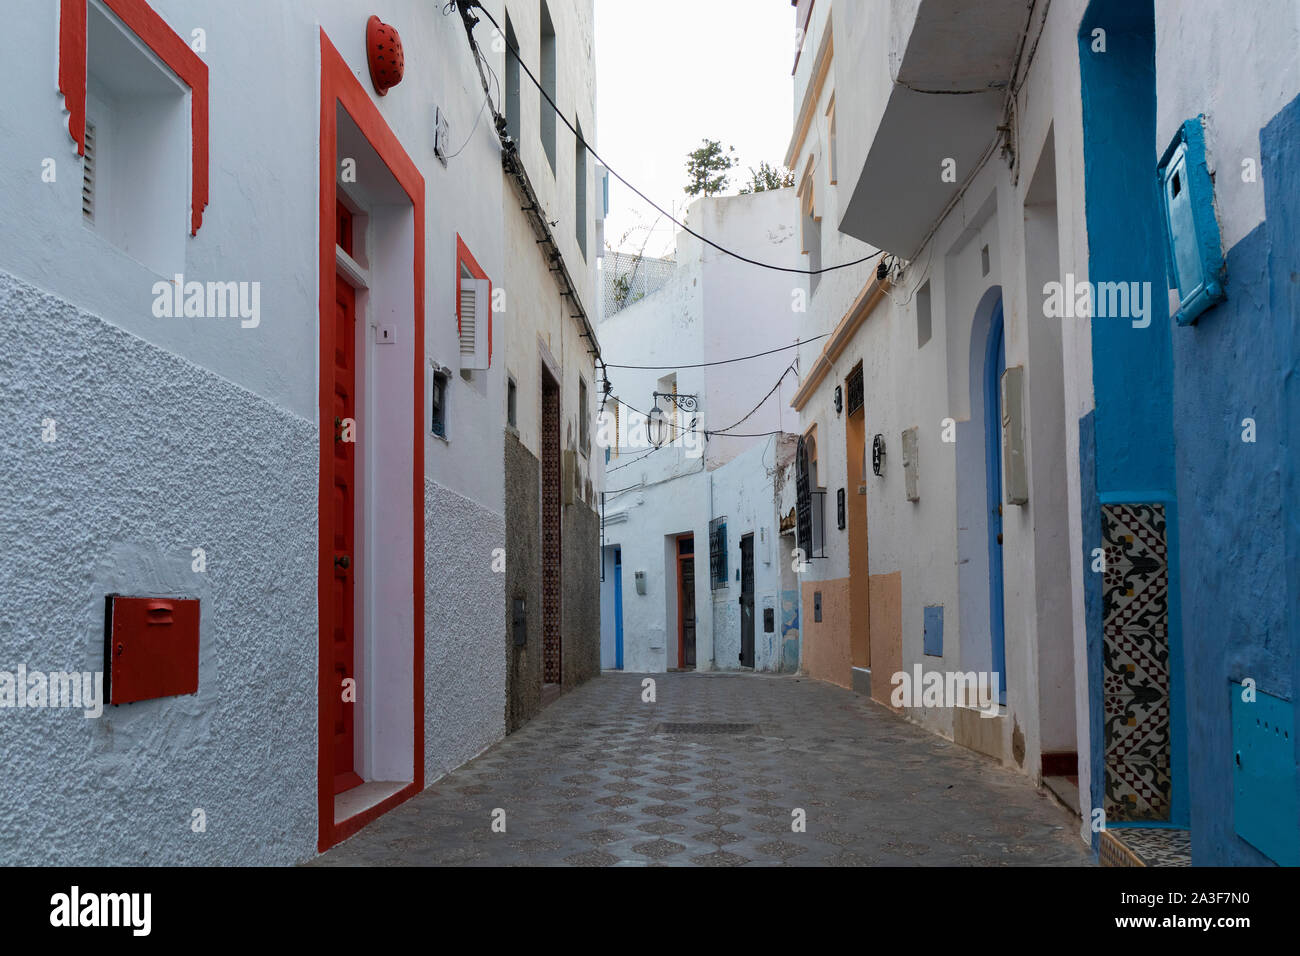 Vieille rue étroite colorés dans la médina d'Asilah, Maroc Banque D'Images